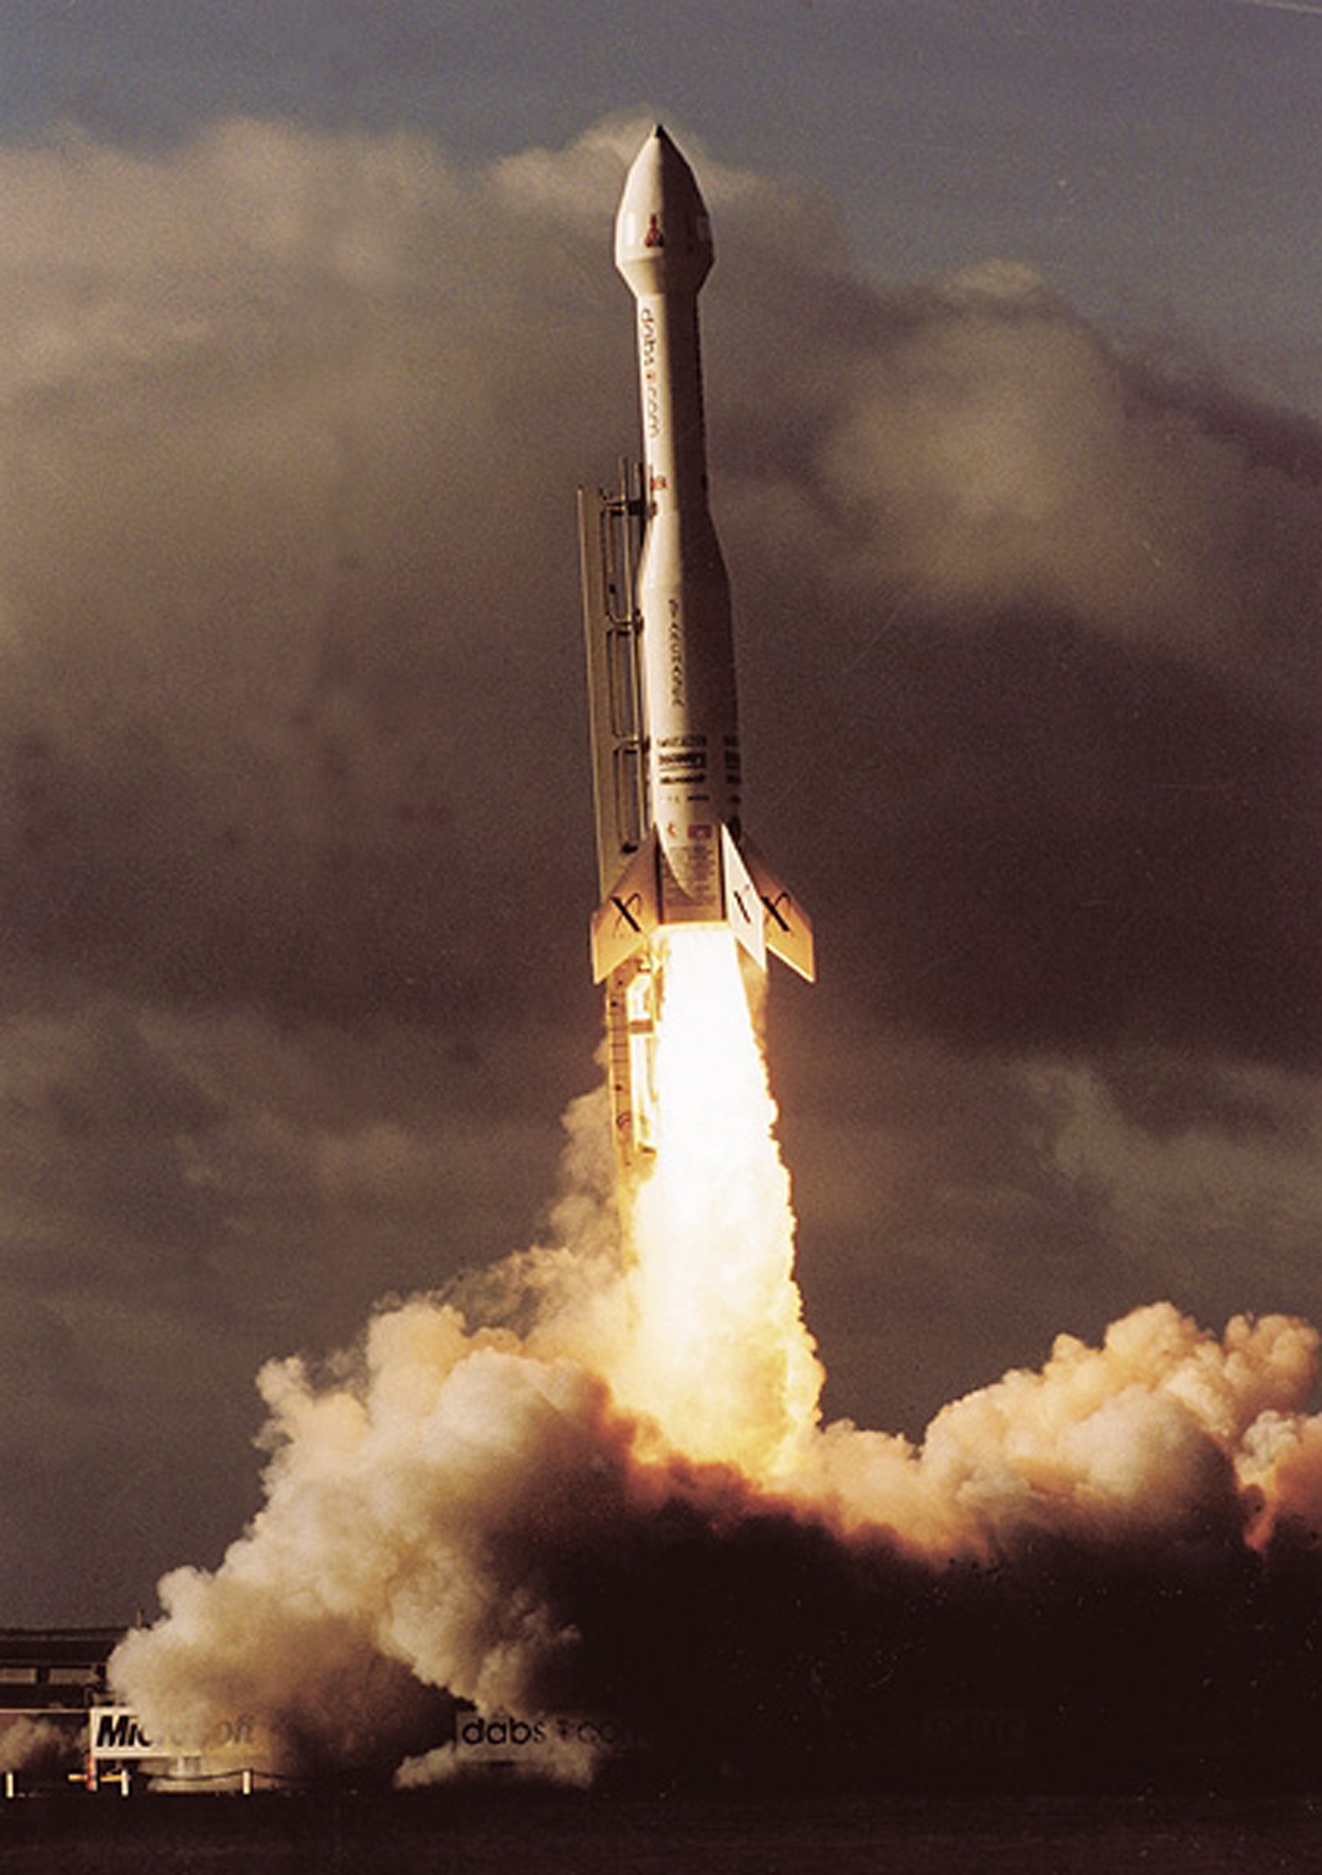 An image of the Nova 1 rocket in flight